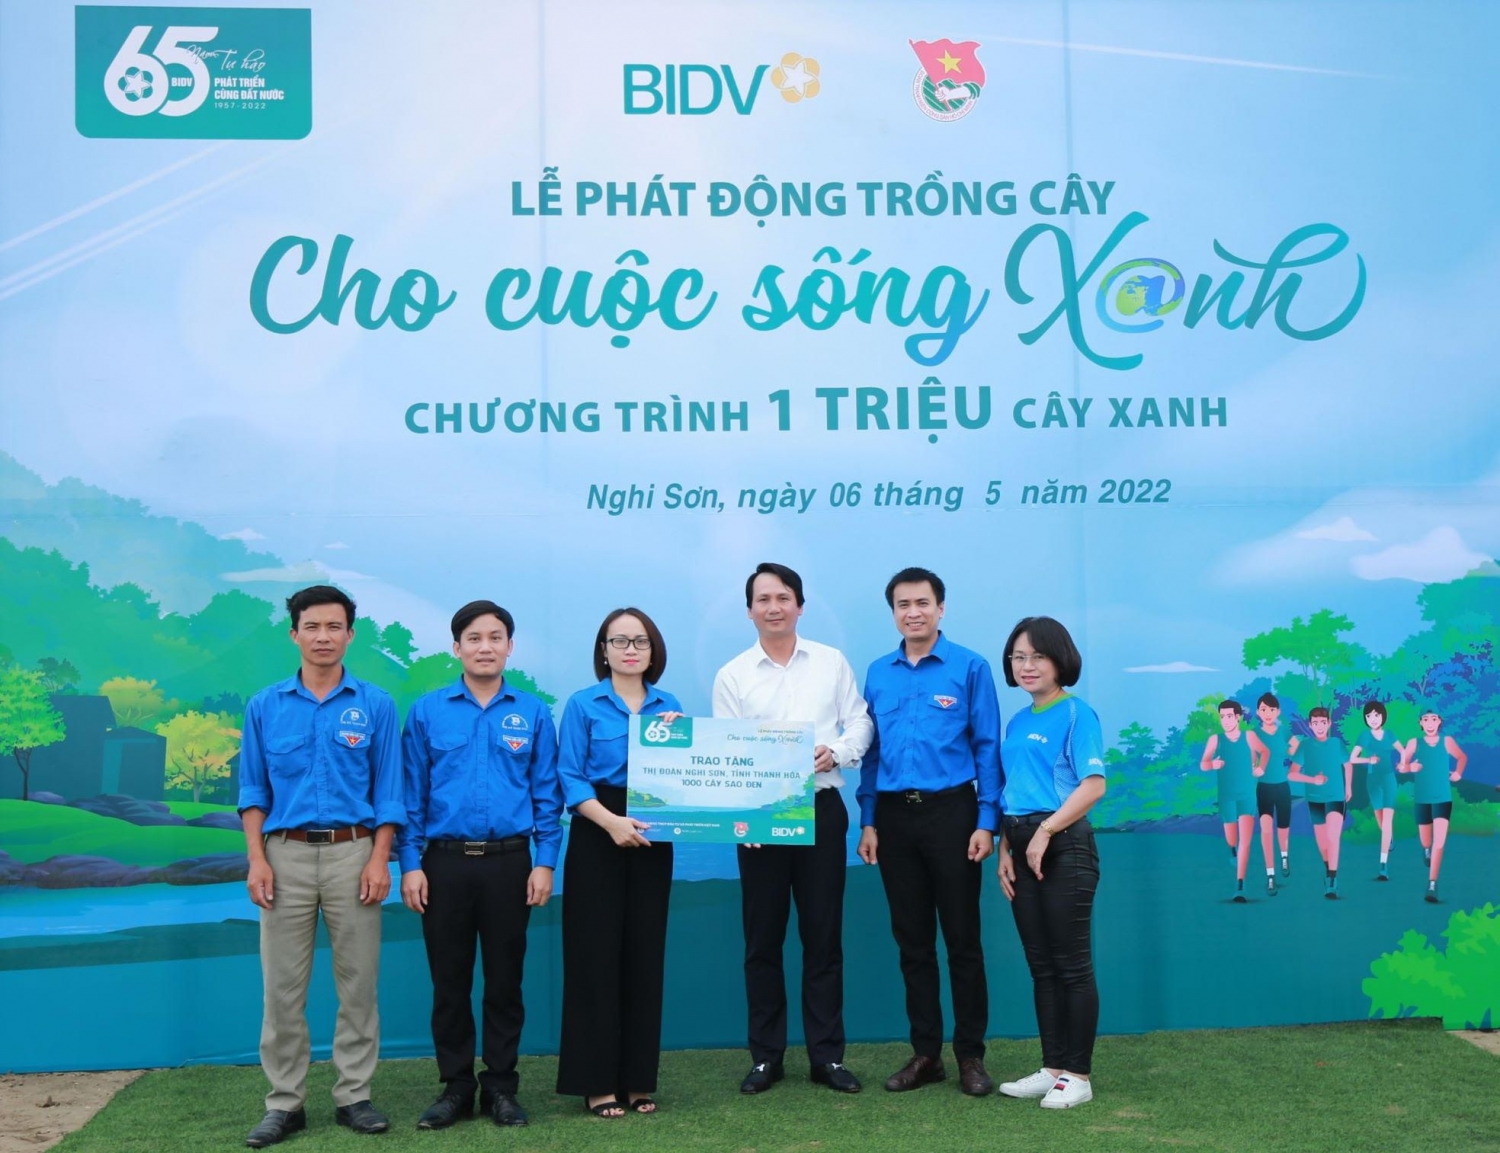 BIDV thực hiện chương trình “Trao máy tính, gửi tương lai” và trồng cây xanh tại Thanh Hóa